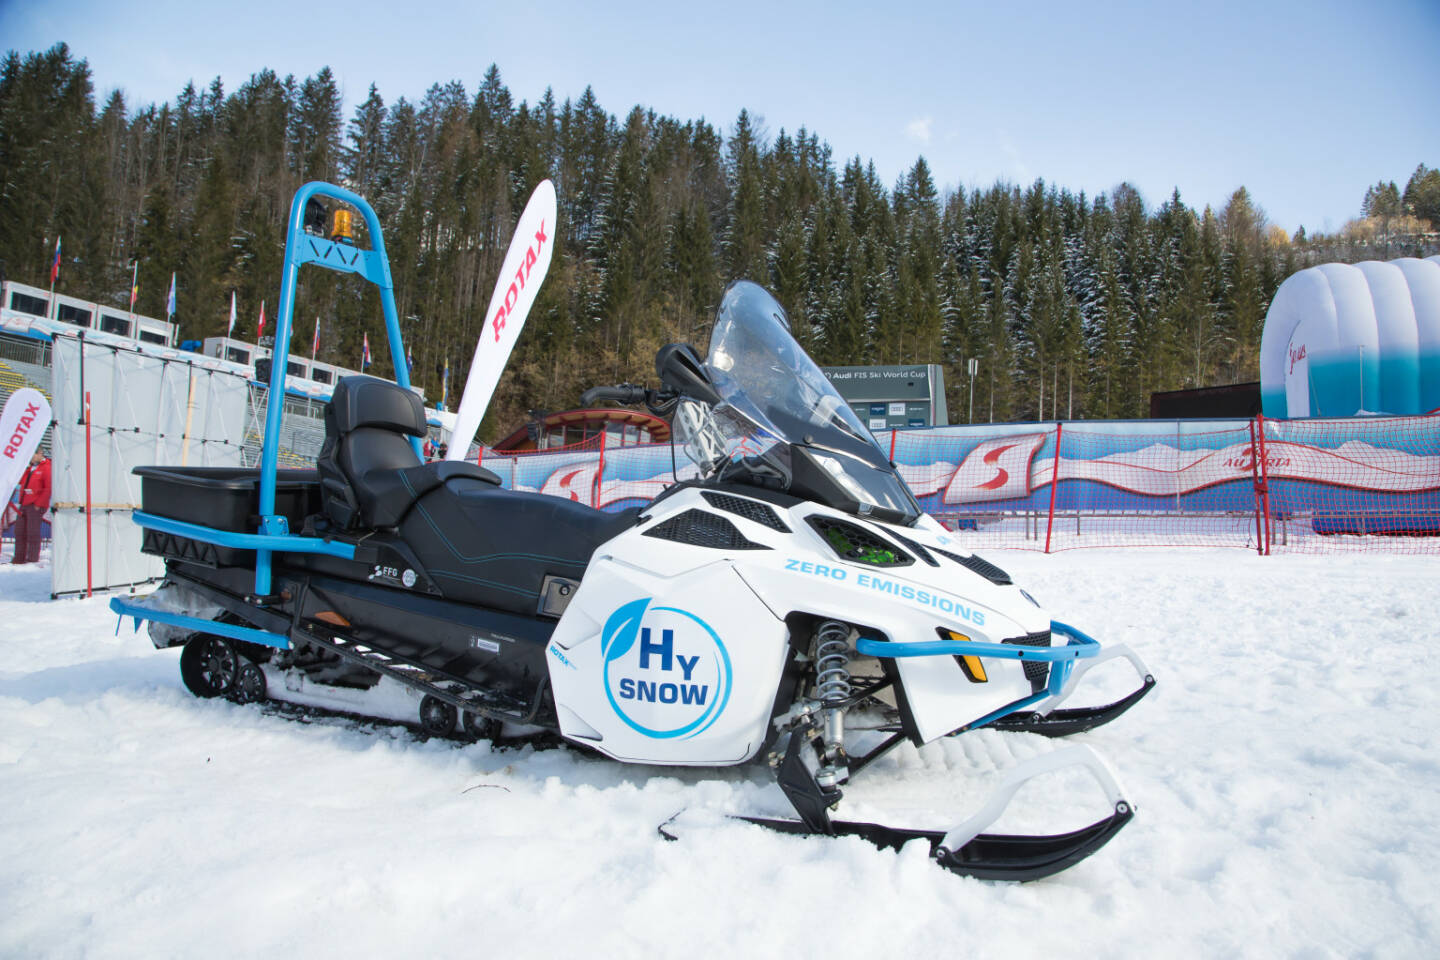 Lynx HySnow - Das erste mit Wasserstoff-Brennstoffzellen betriebene Schneefahrzeug aus dem Hause Rotax. Fotocredit:Rotax